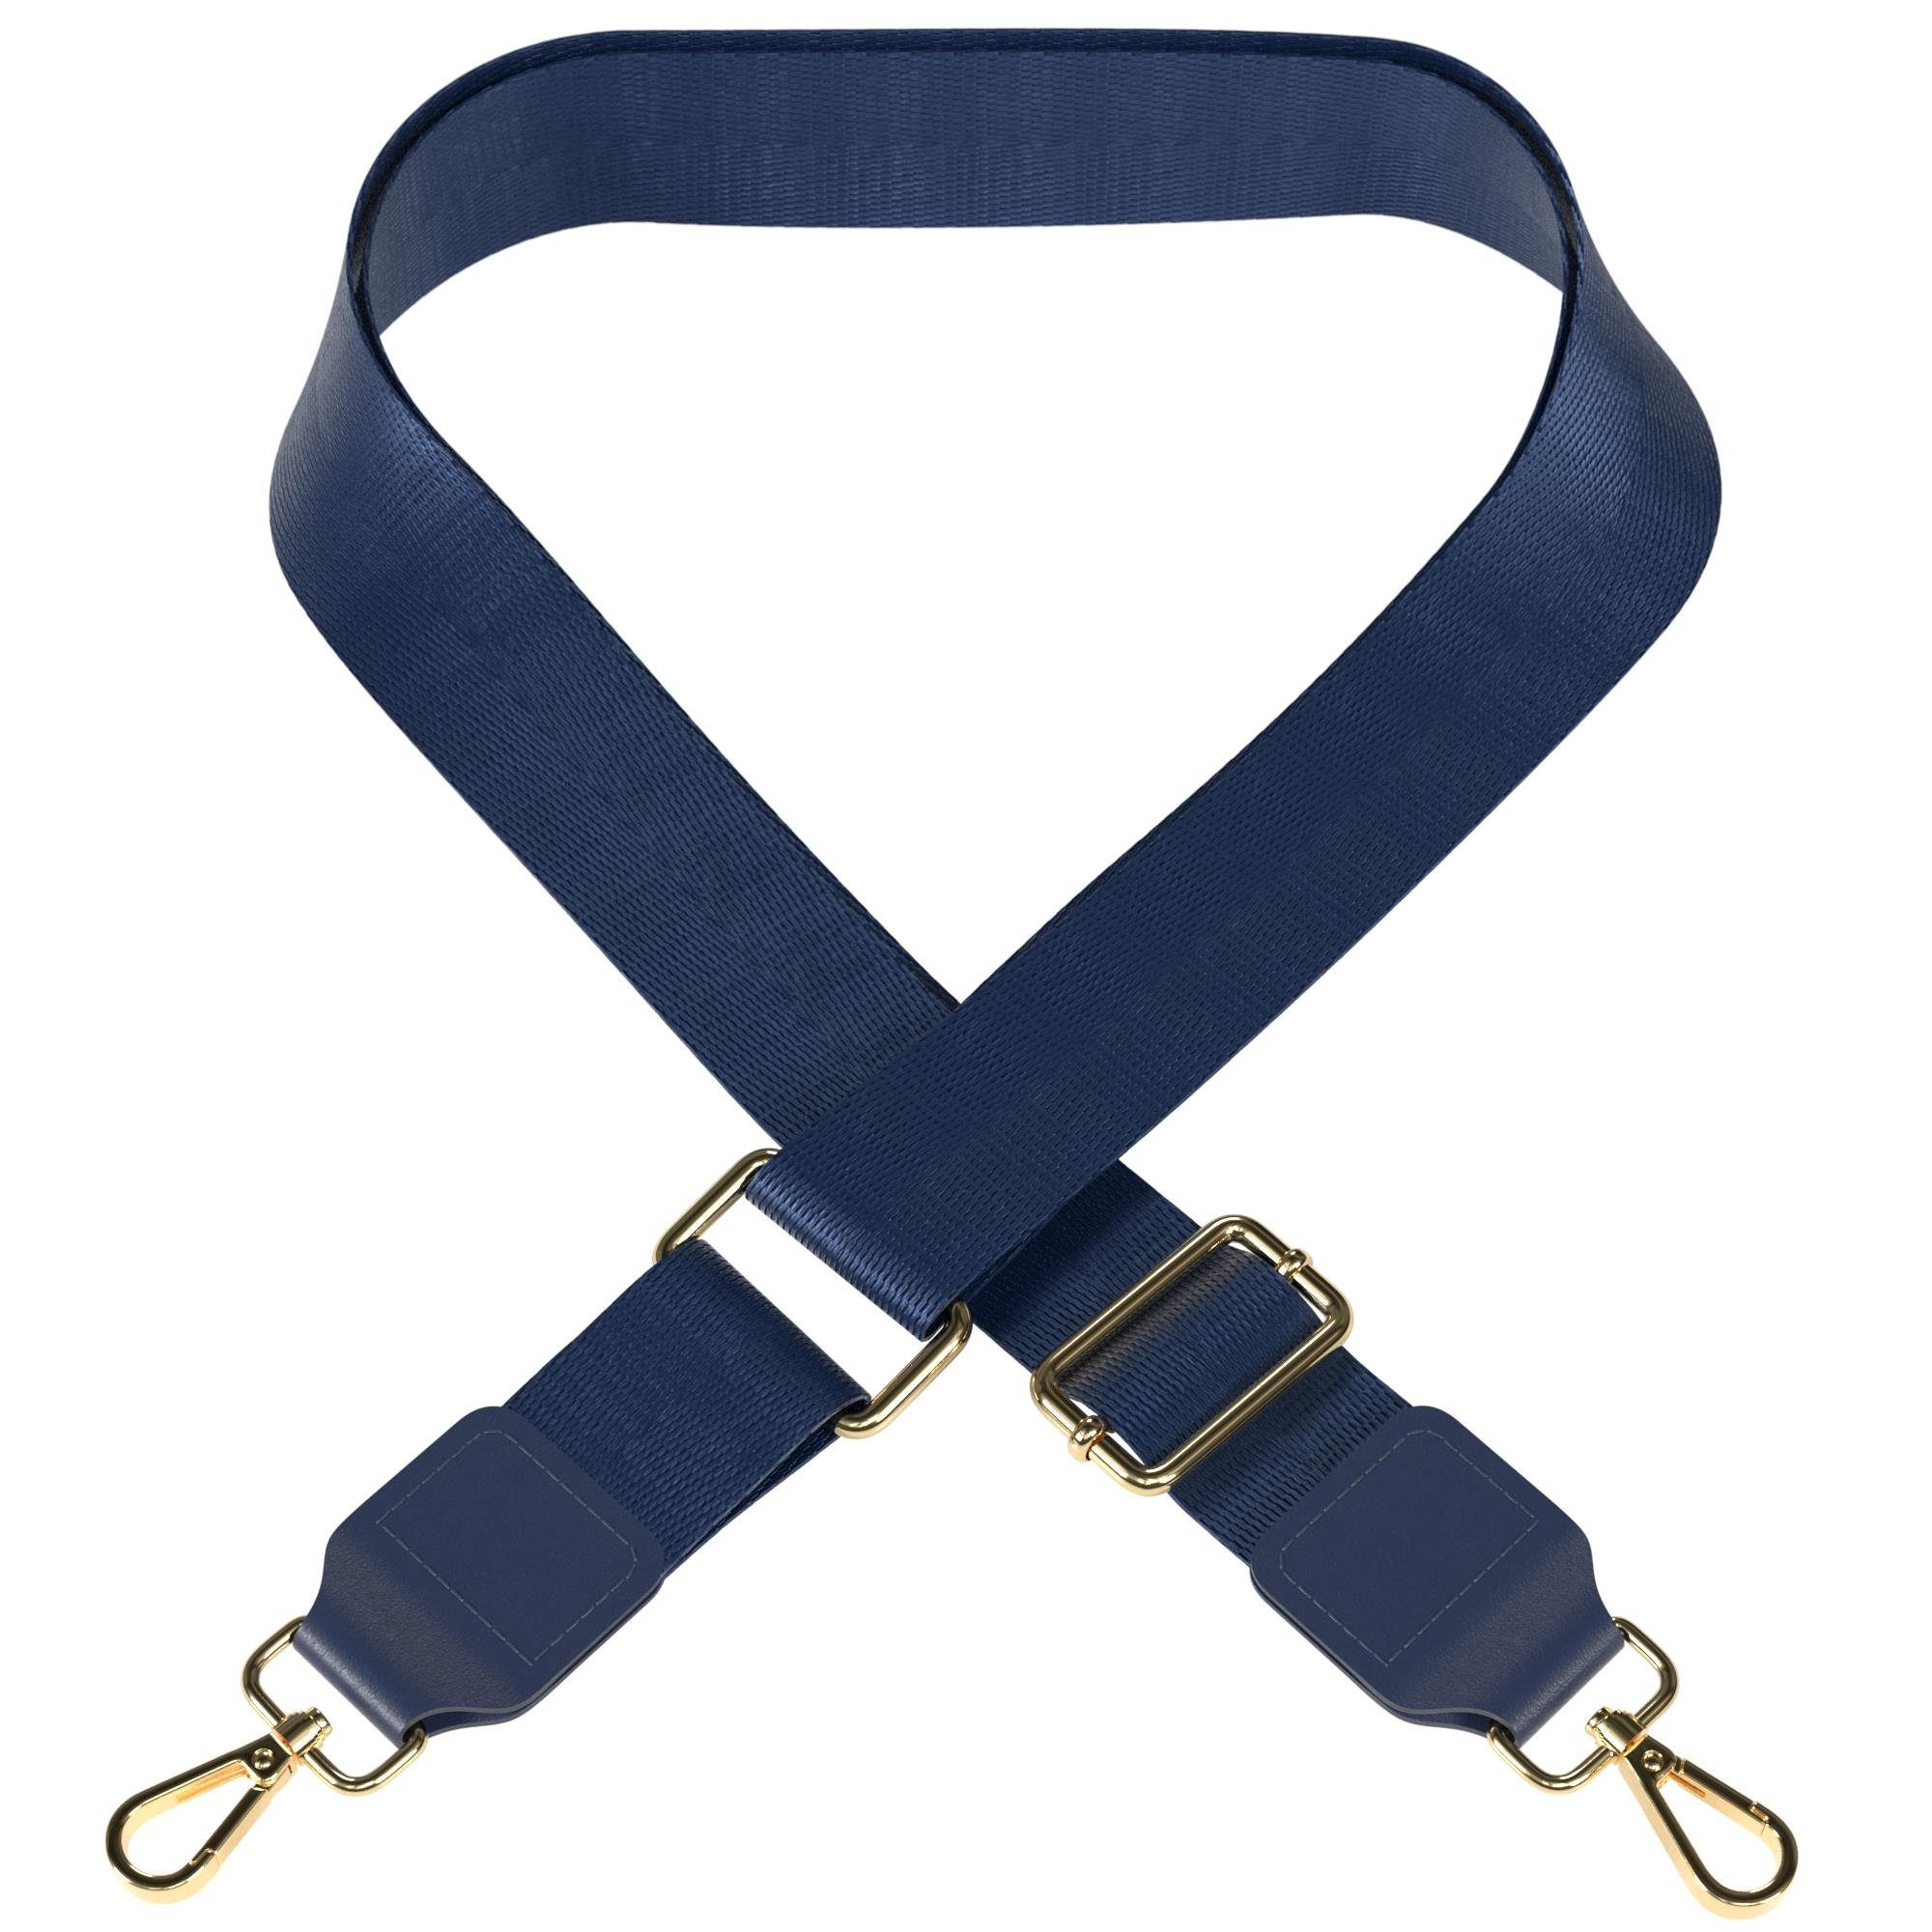 EAZY CASE Schulterriemen Schultergurte für Taschen unifarbend Body Bag Riemchen Wechselband Ersatzgurt mit Karabiner Verschluss Blau Dunkelblau - Metall Gold | Schulterriemen